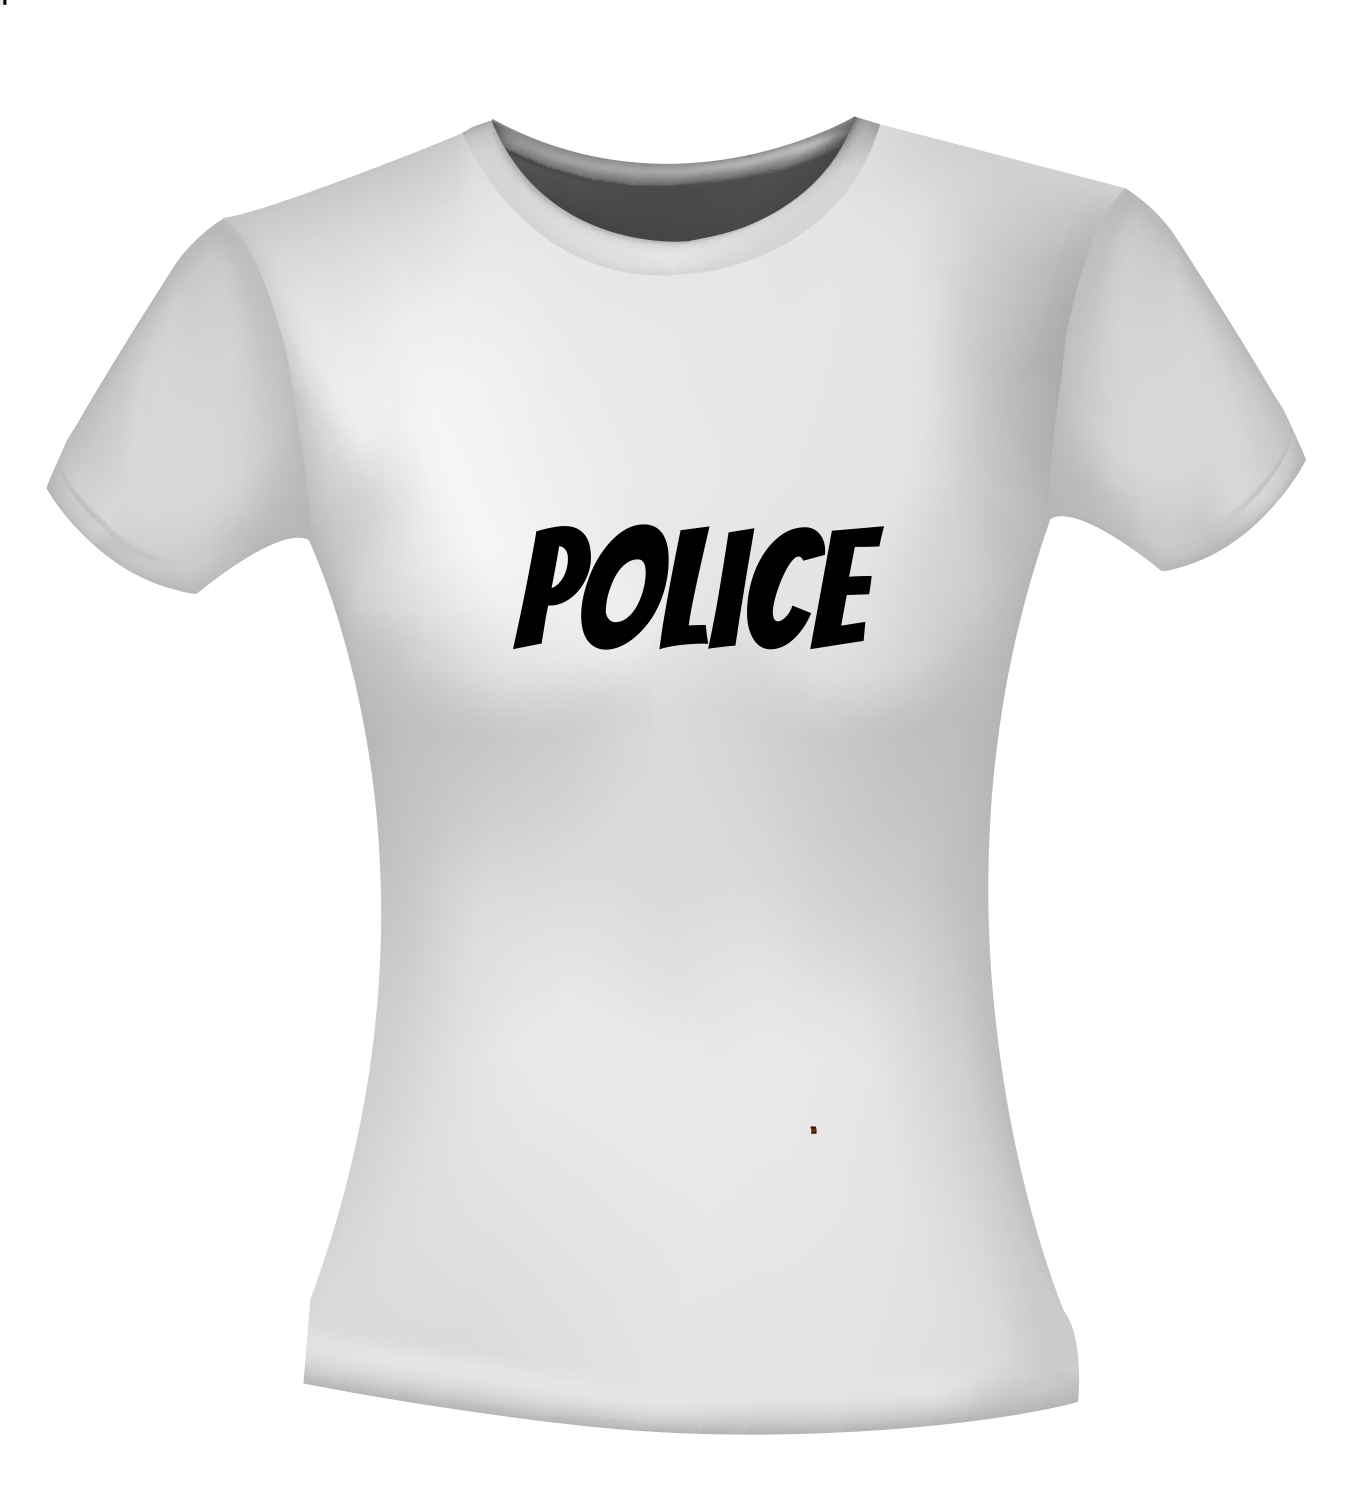 Motel kapsel Profeet Police shirt dames en heren voor carnaval